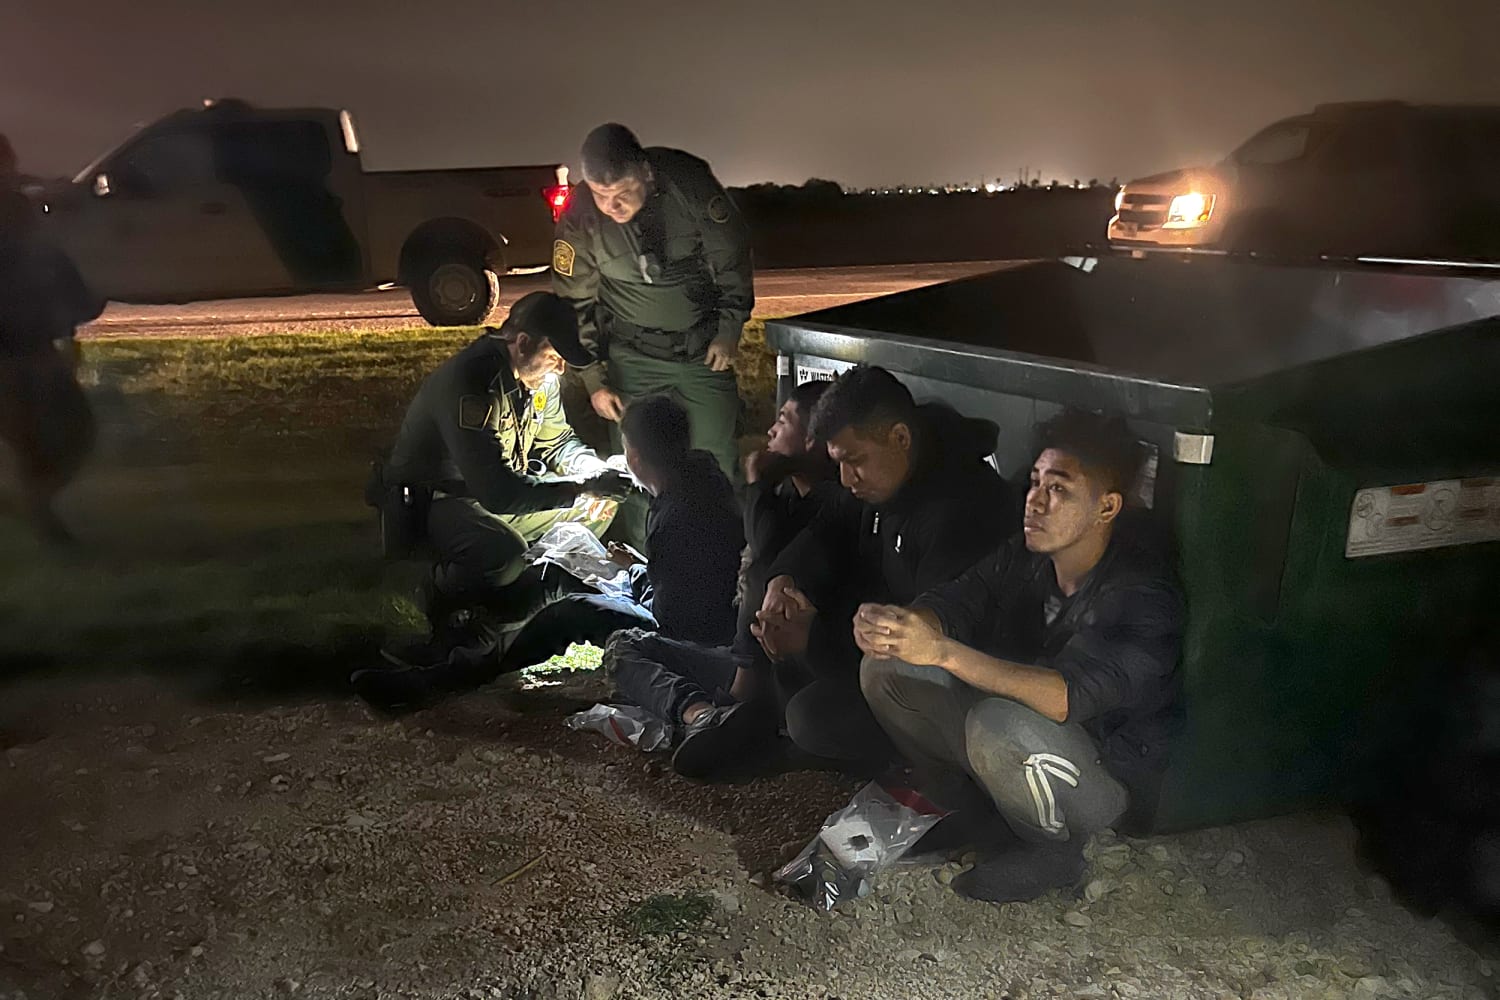 RGV Border Patrol assists migrant in medical distress